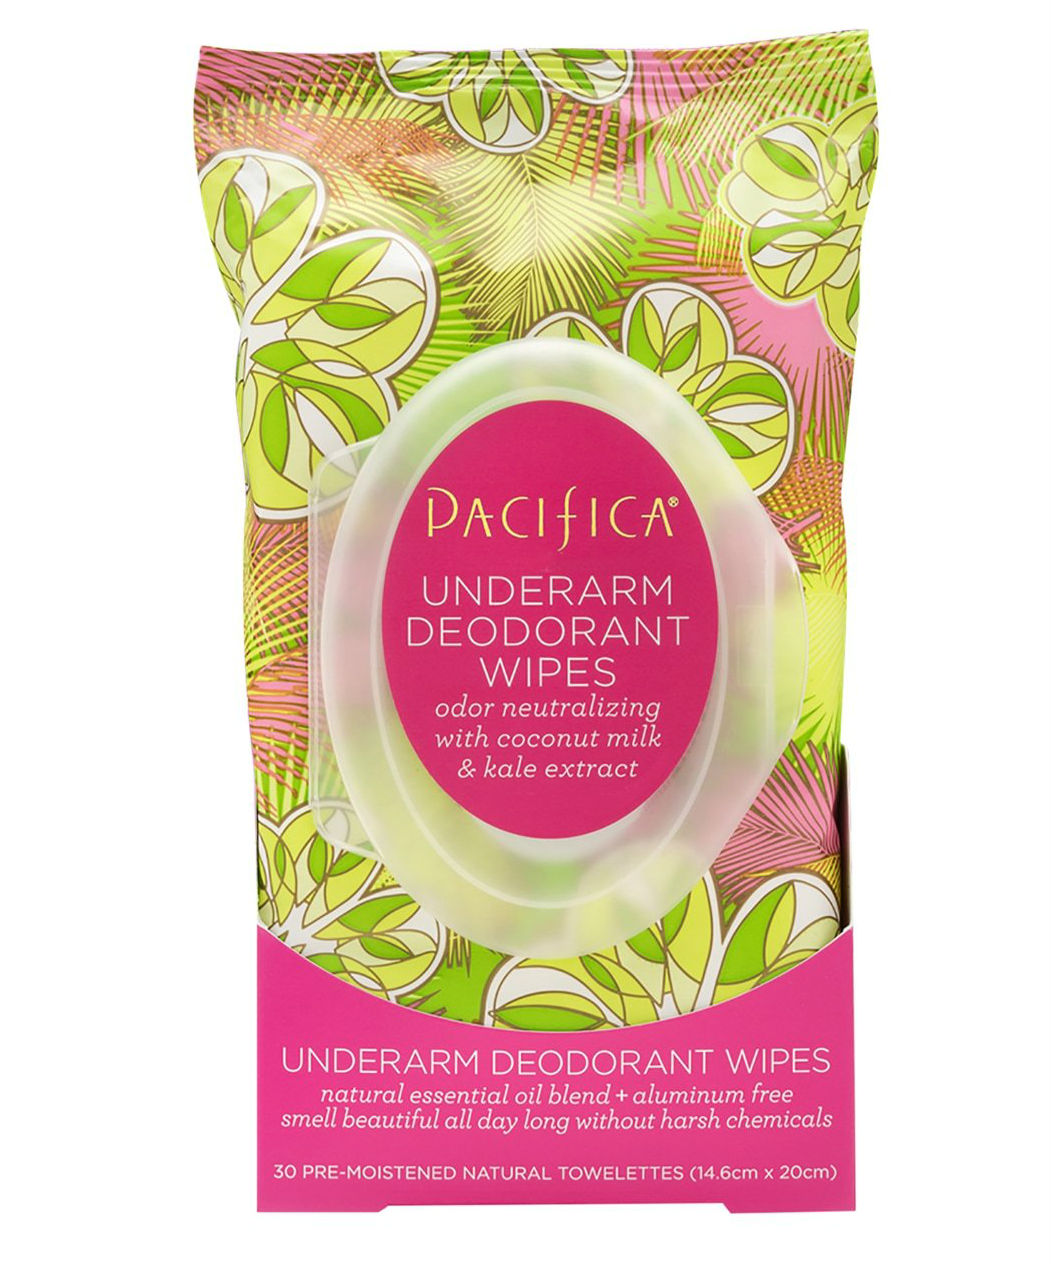 Pacifica Underarm Deodorant Wipes, $9